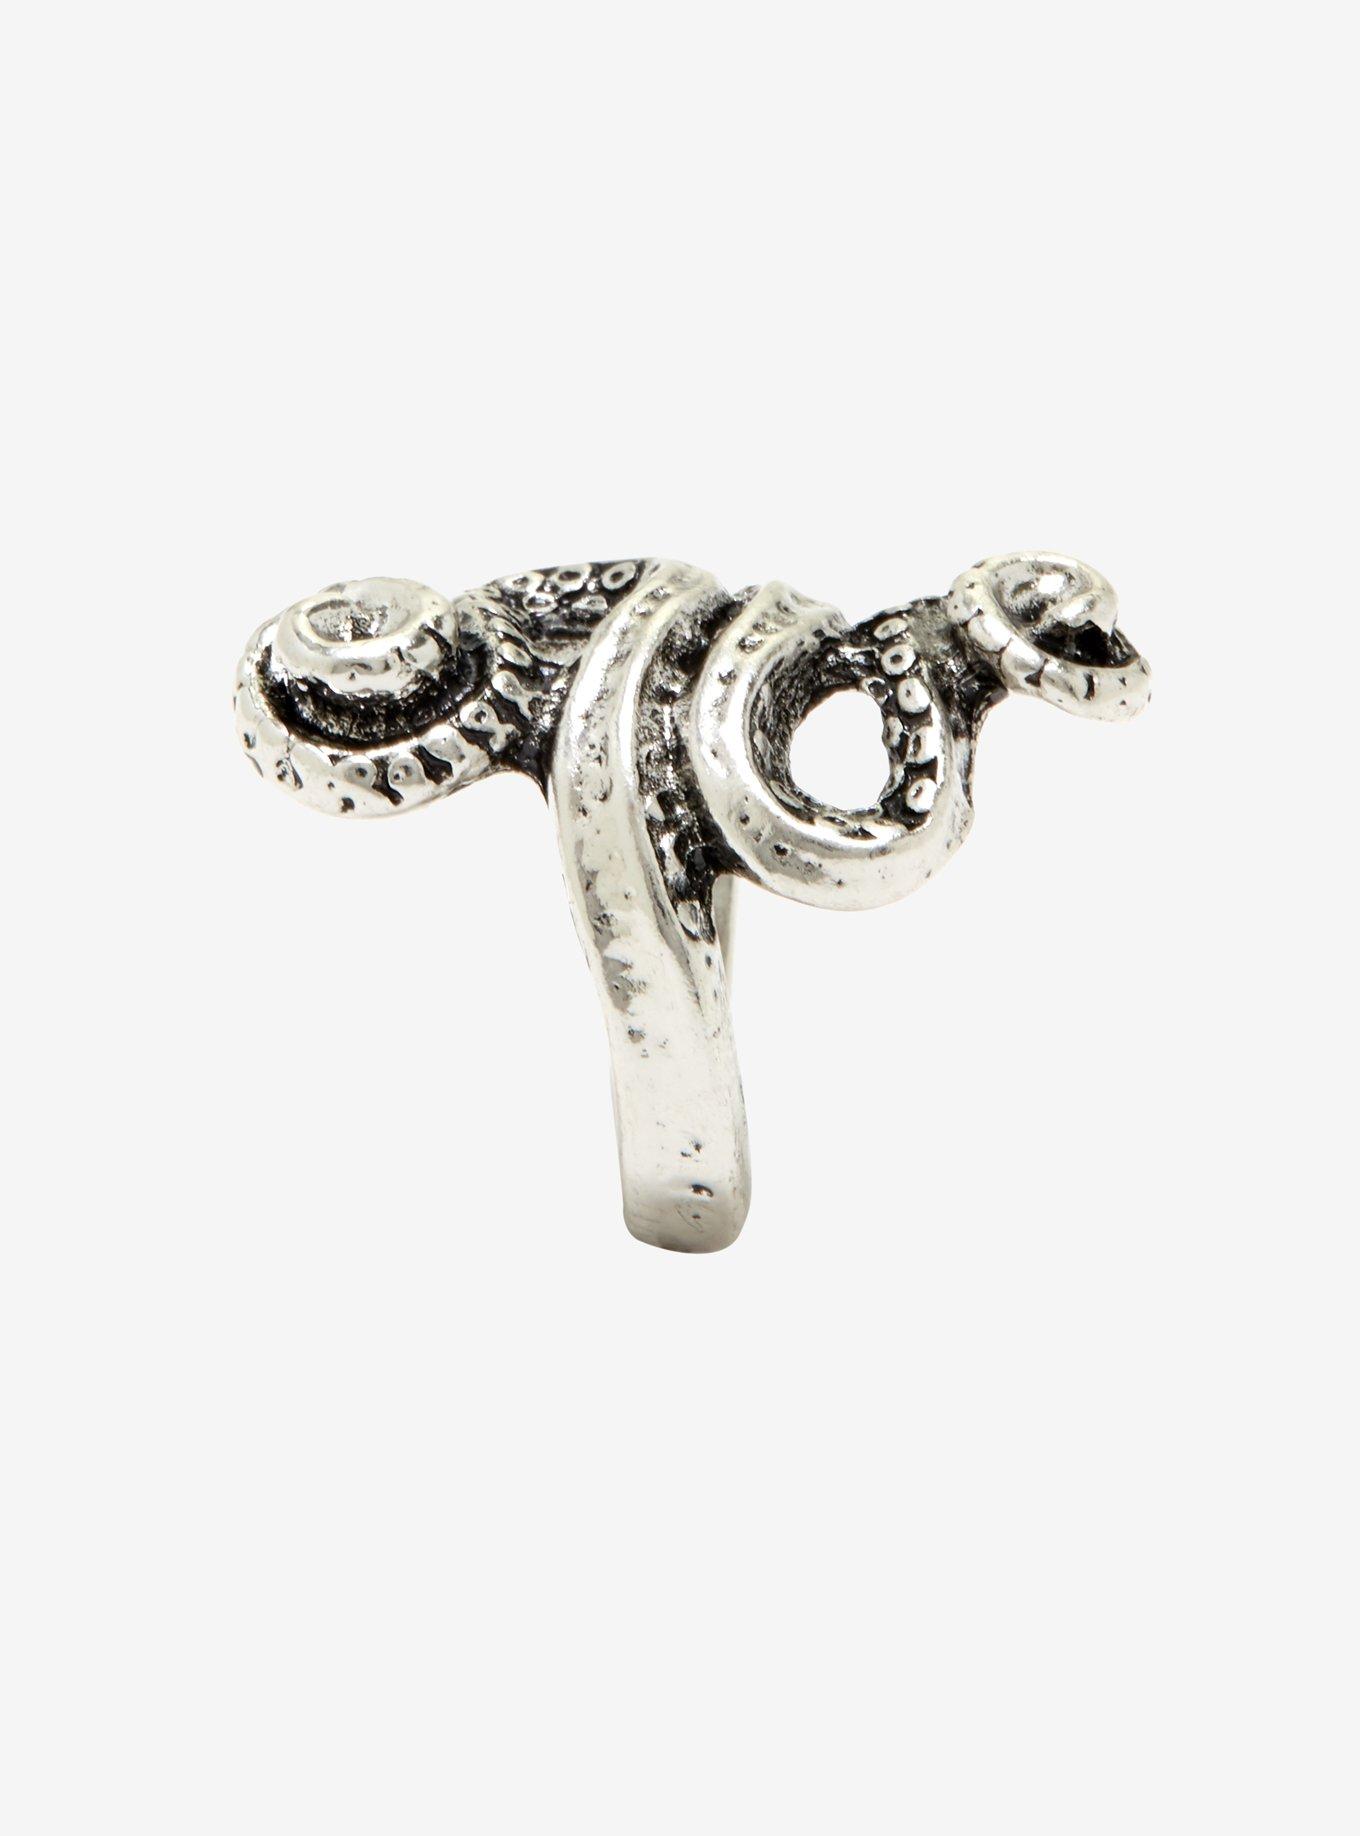 Octopus Tentacle Ring, , alternate